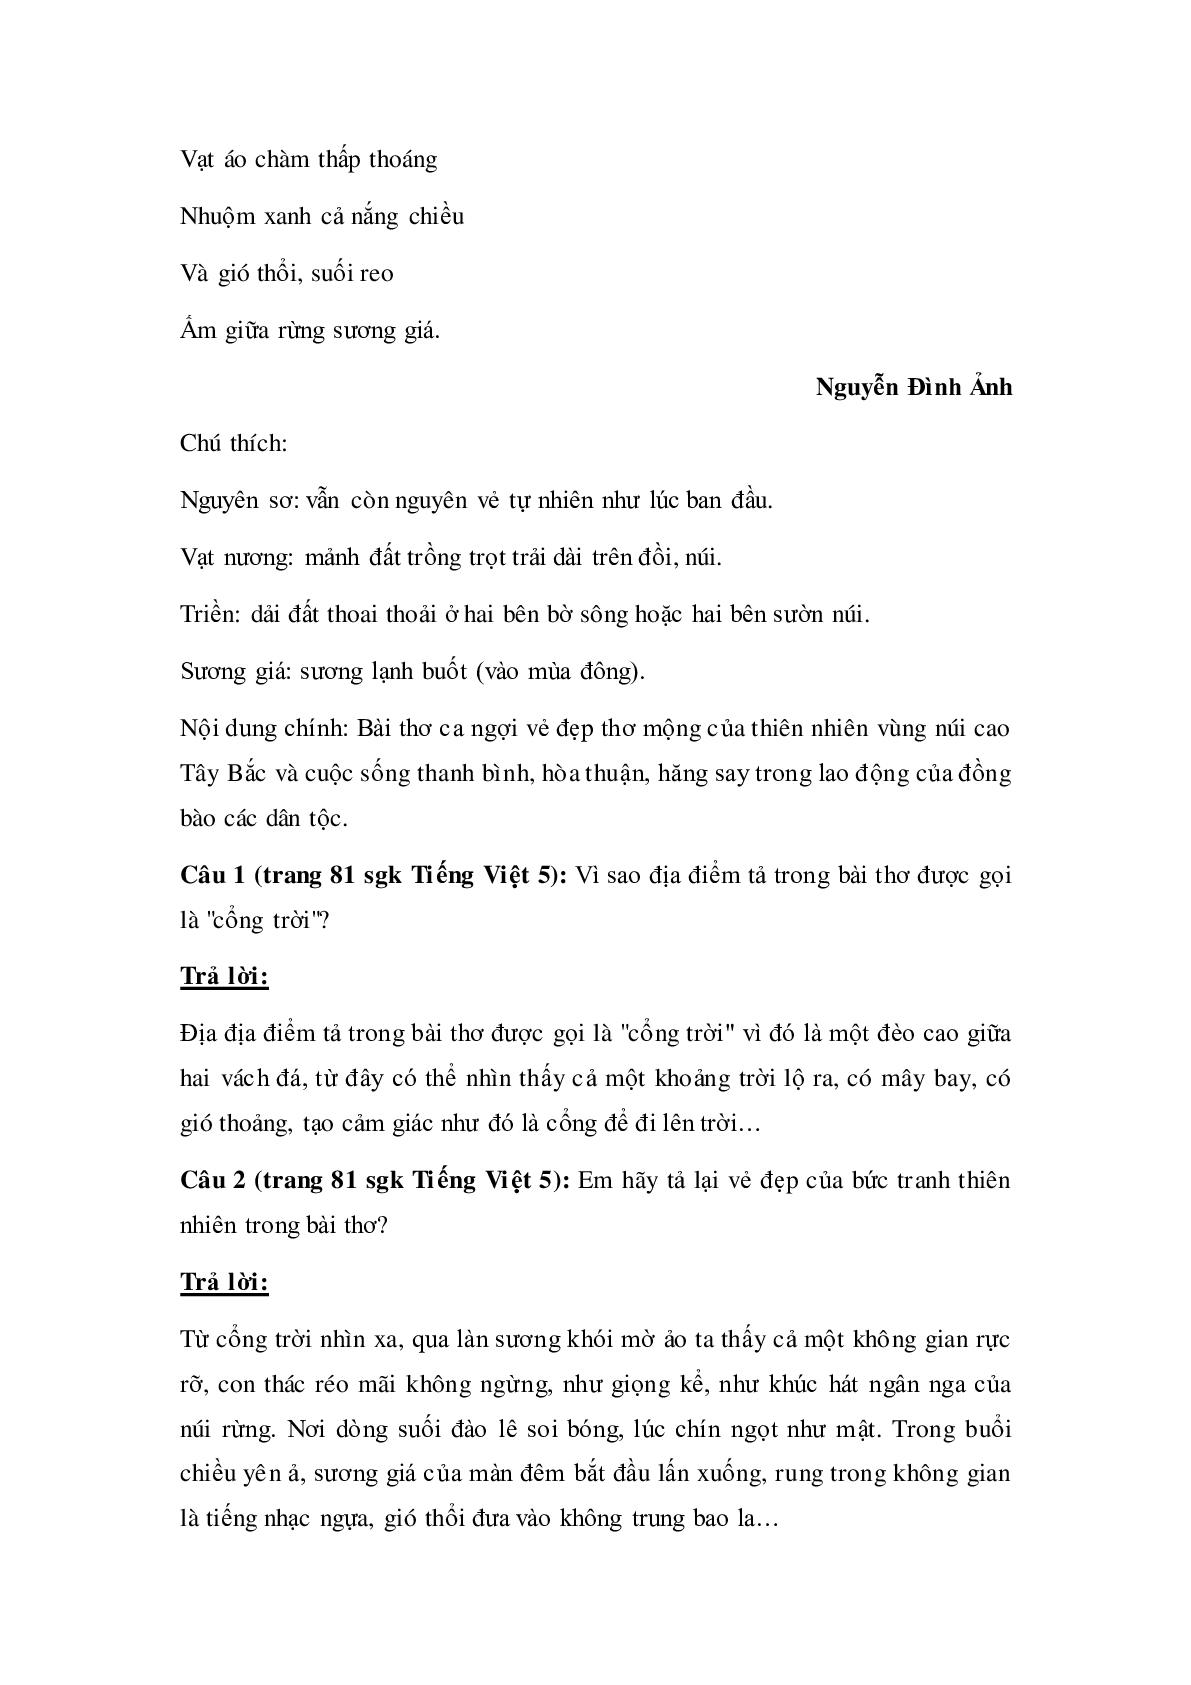 Soạn Tiếng Việt lớp 5: Tập đọc: Trước cổng trời mới nhất (trang 2)